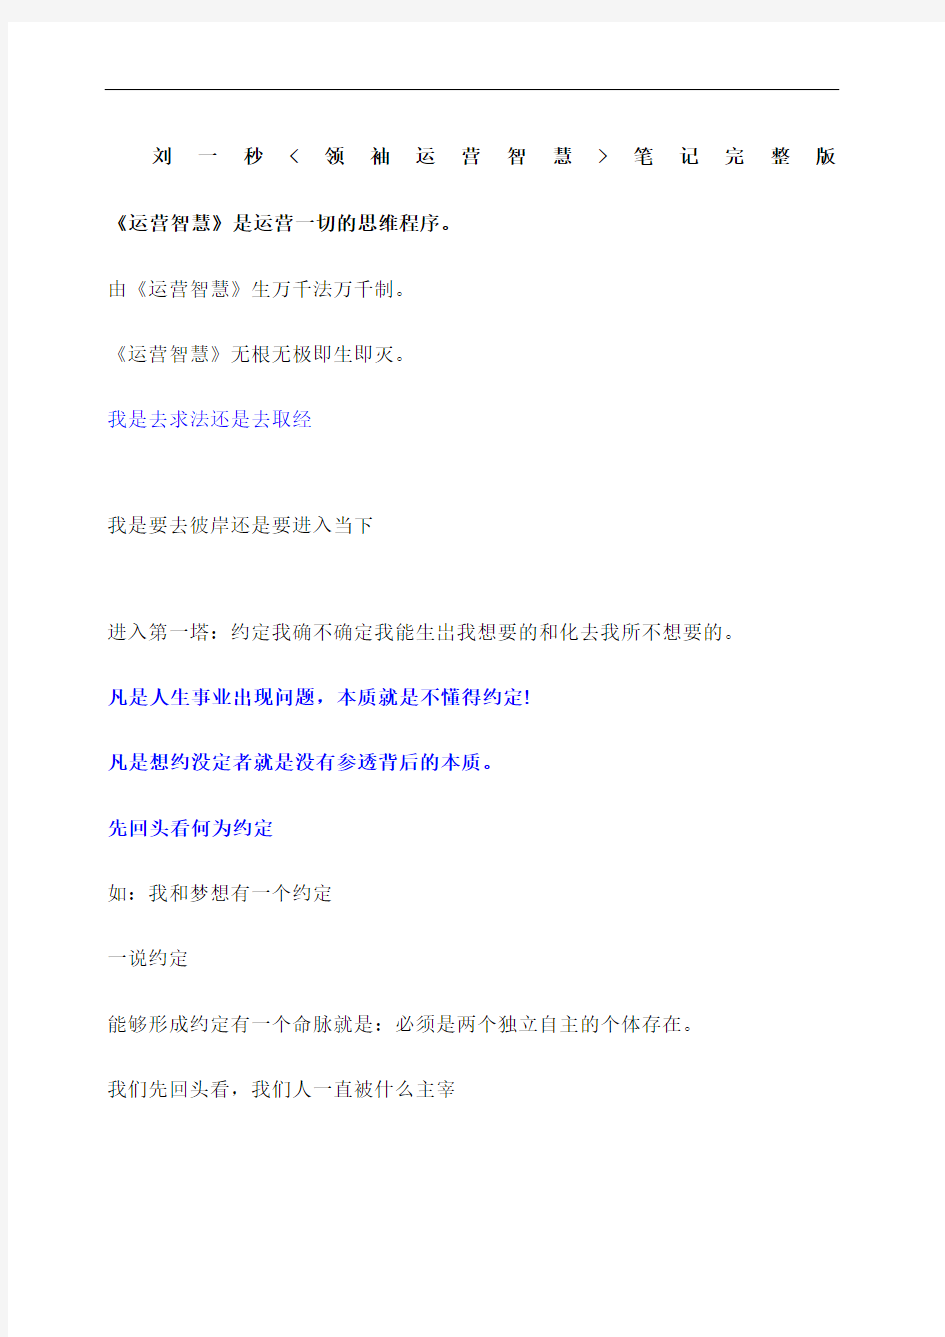 刘一秒领袖运营智慧笔记上海万人完整版修订稿